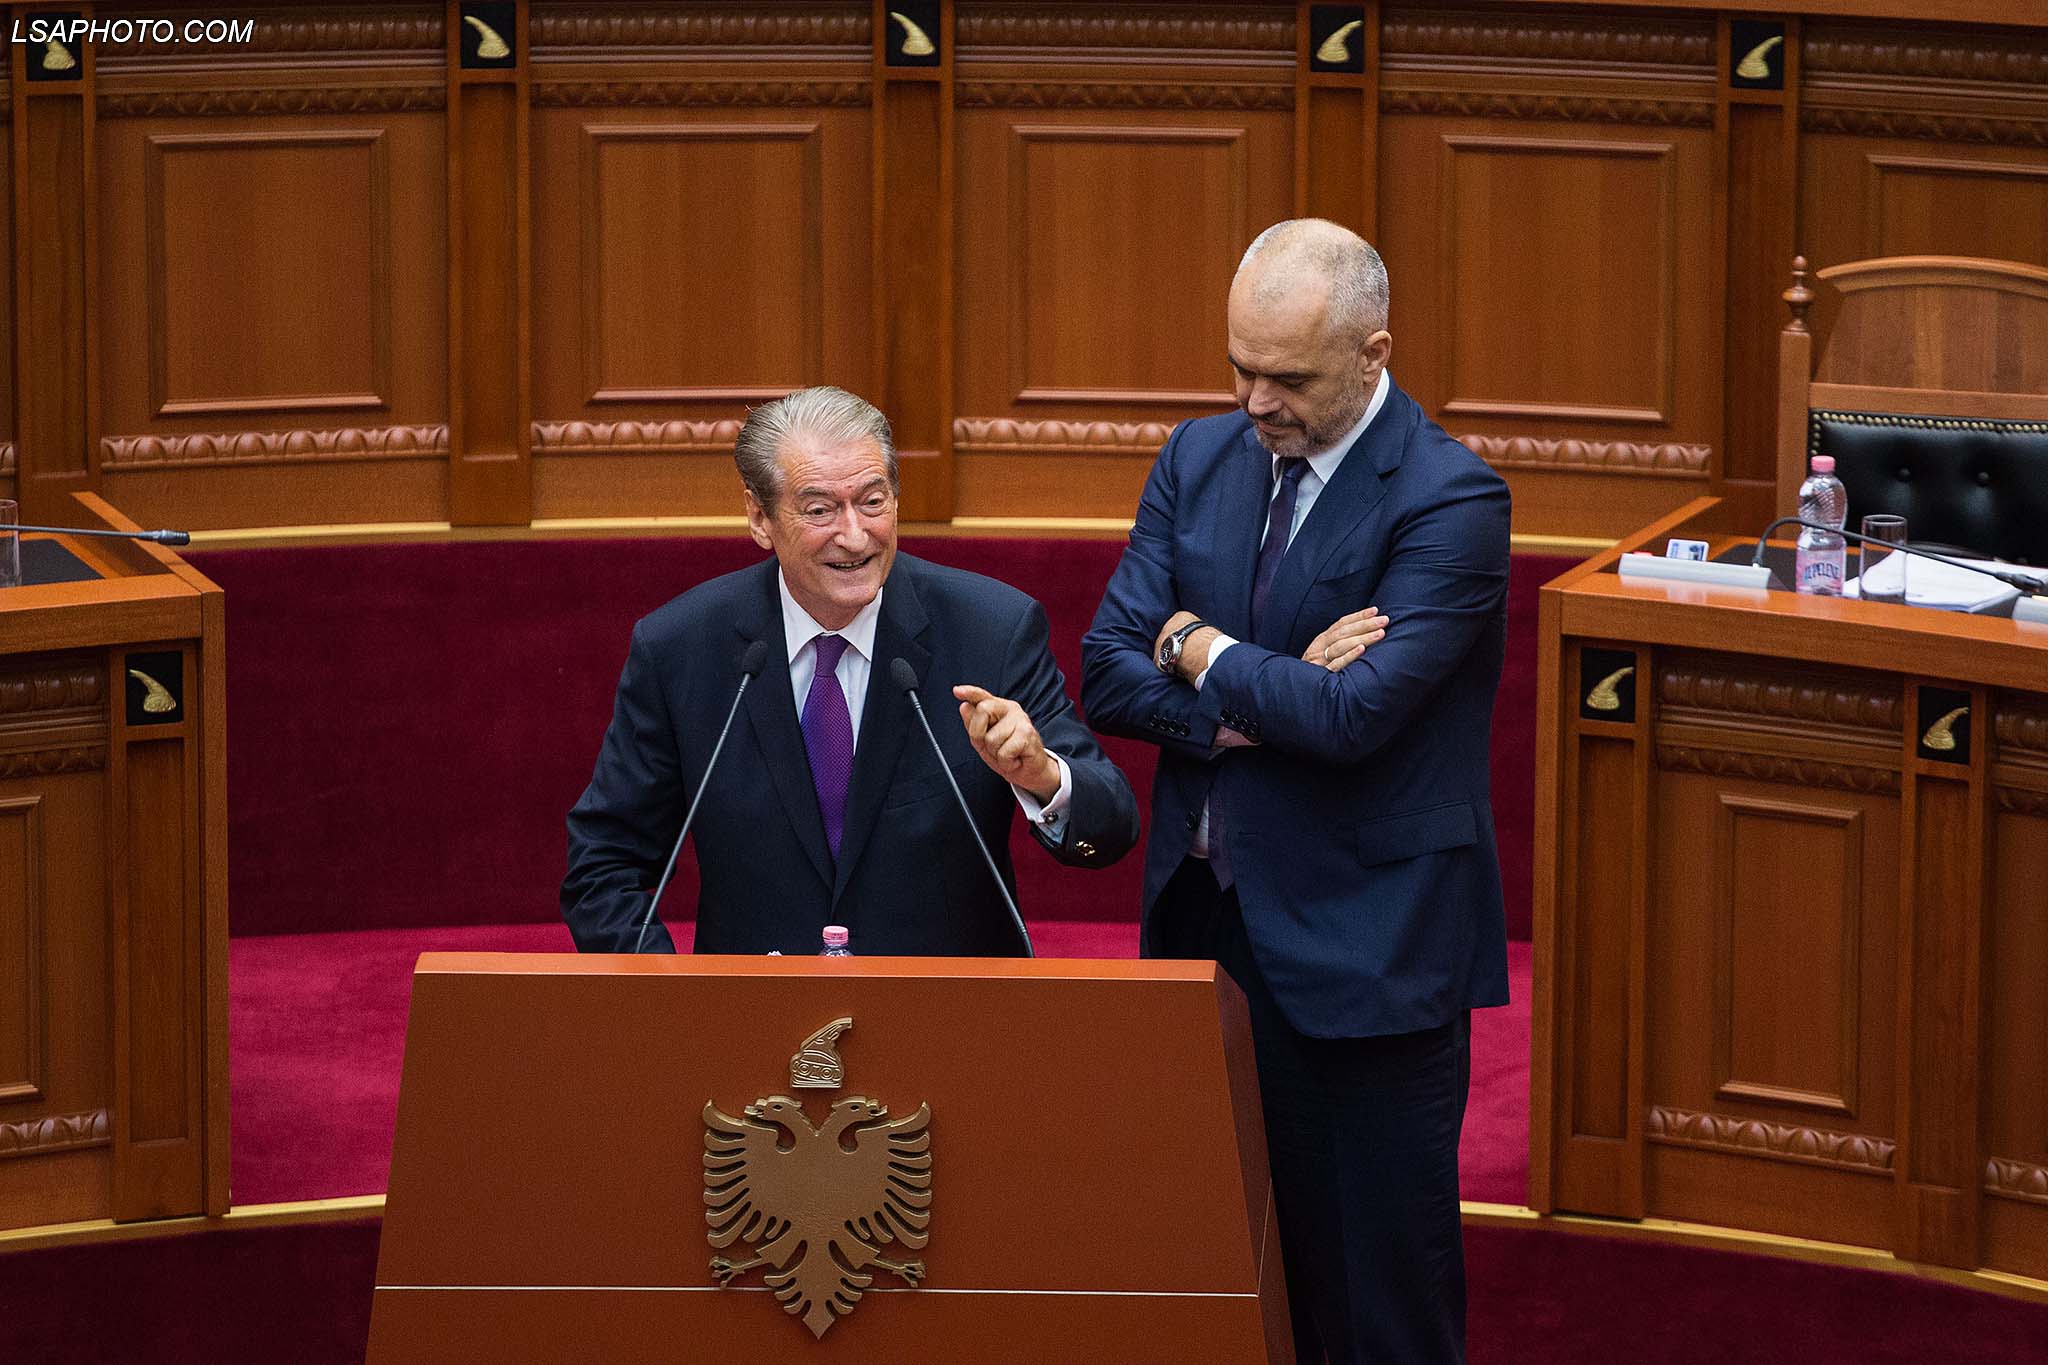 Ish kryeministri Sali Berisha dhe kryeministri Edi Rama, gjate nje seance parlamentare, ku eshte debatuar ne lidhje me ceshtjen e CEZ./r/n/r/nFormer Prime Minister Sali Berisha and Prime Minister Edi Rama, during a parliamentary session.